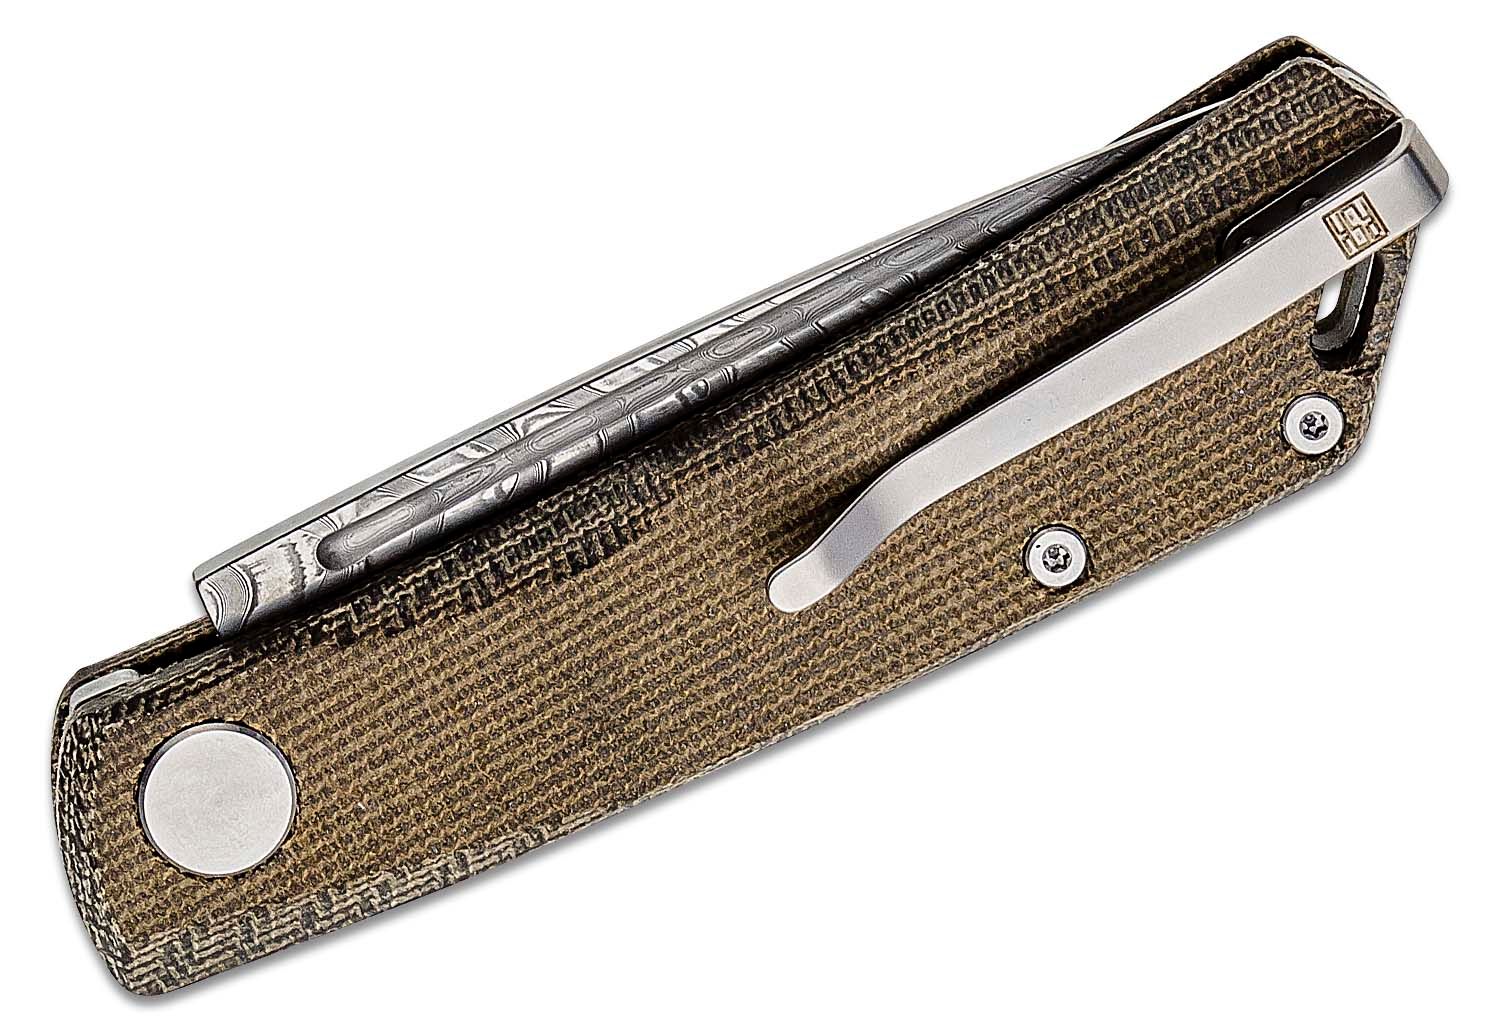 Real Steel Luna - Slip Joint Knife, Carbon Fiber